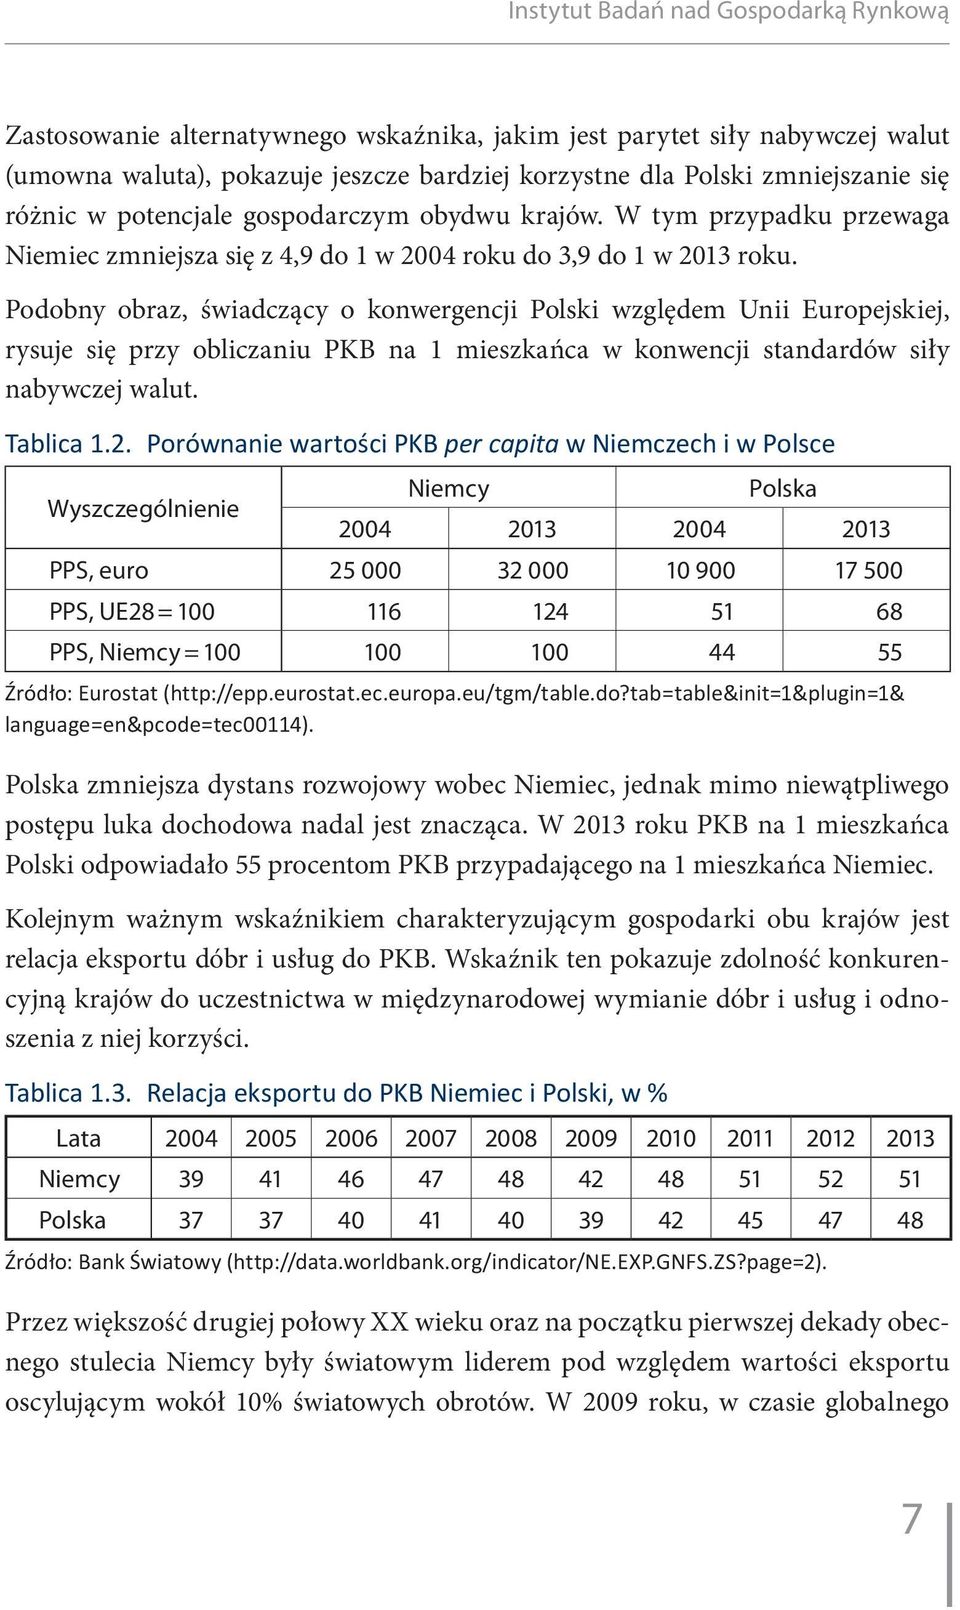 Podobny obraz, świadczący o konwergencji Polski względem Unii Europejskiej, rysuje się przy obliczaniu PKB na 1 mieszkańca w konwencji standardów siły nabywczej walut. Tablica 1.2.